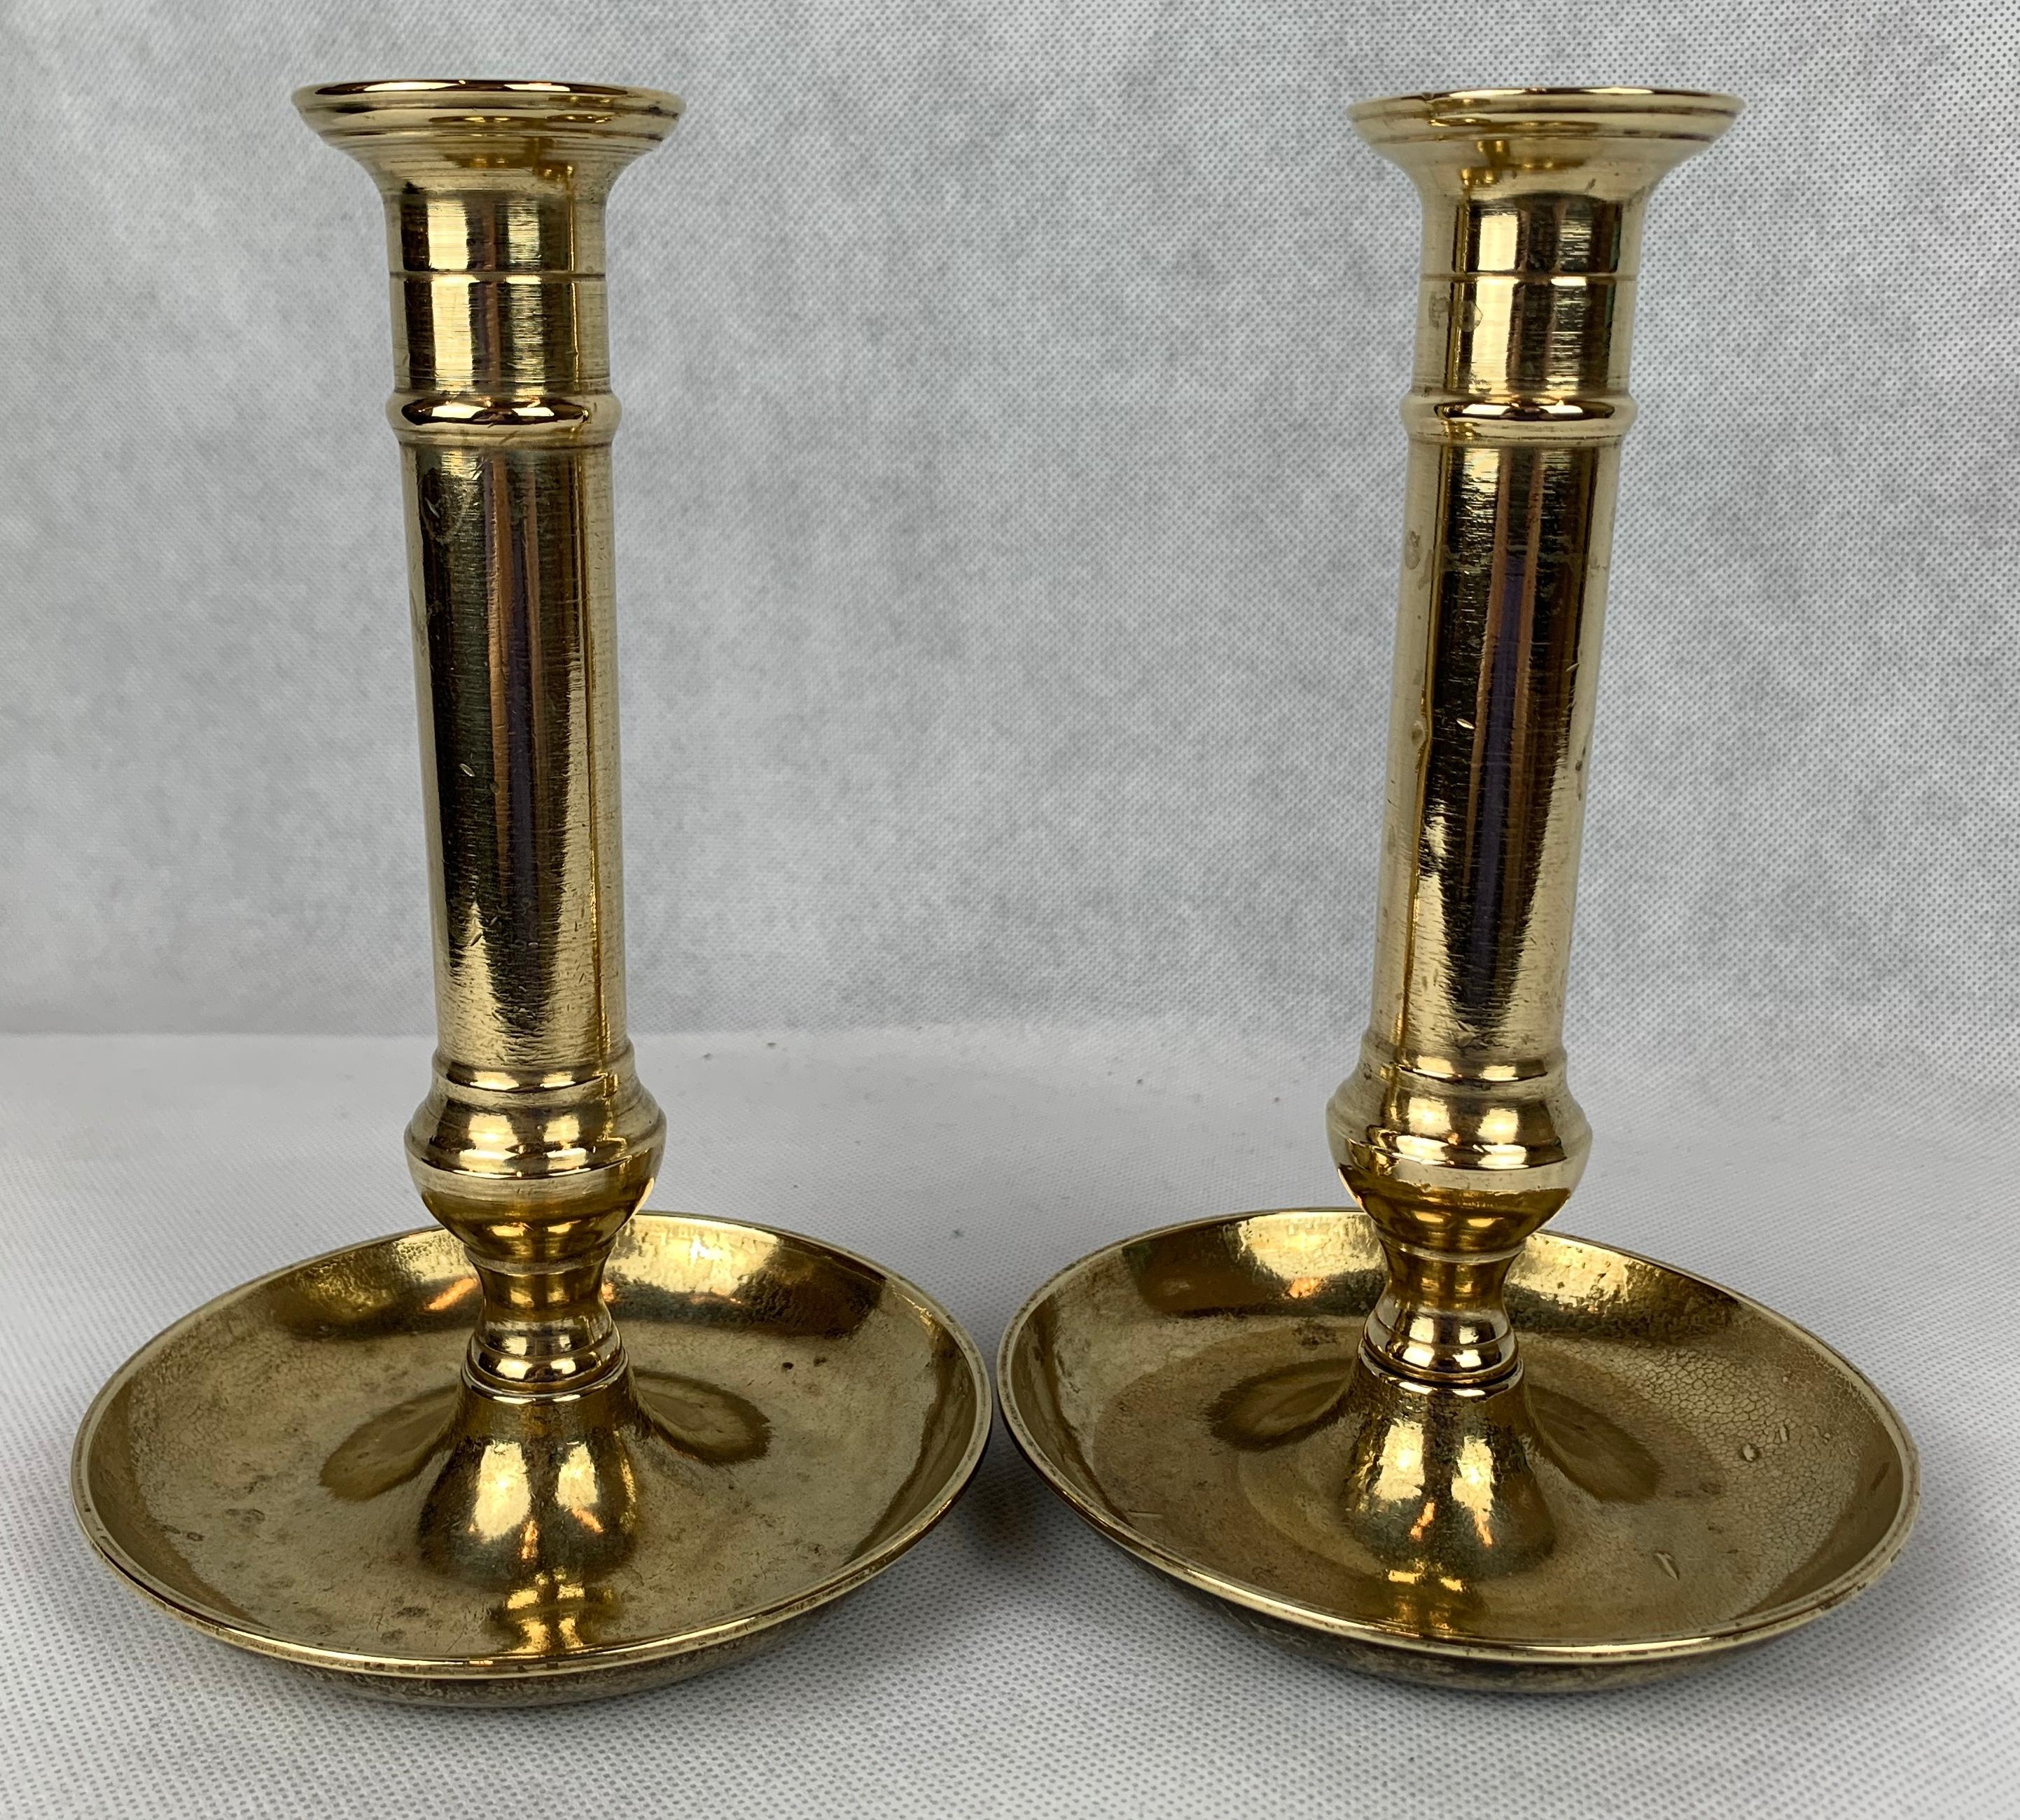 value of brass candlesticks